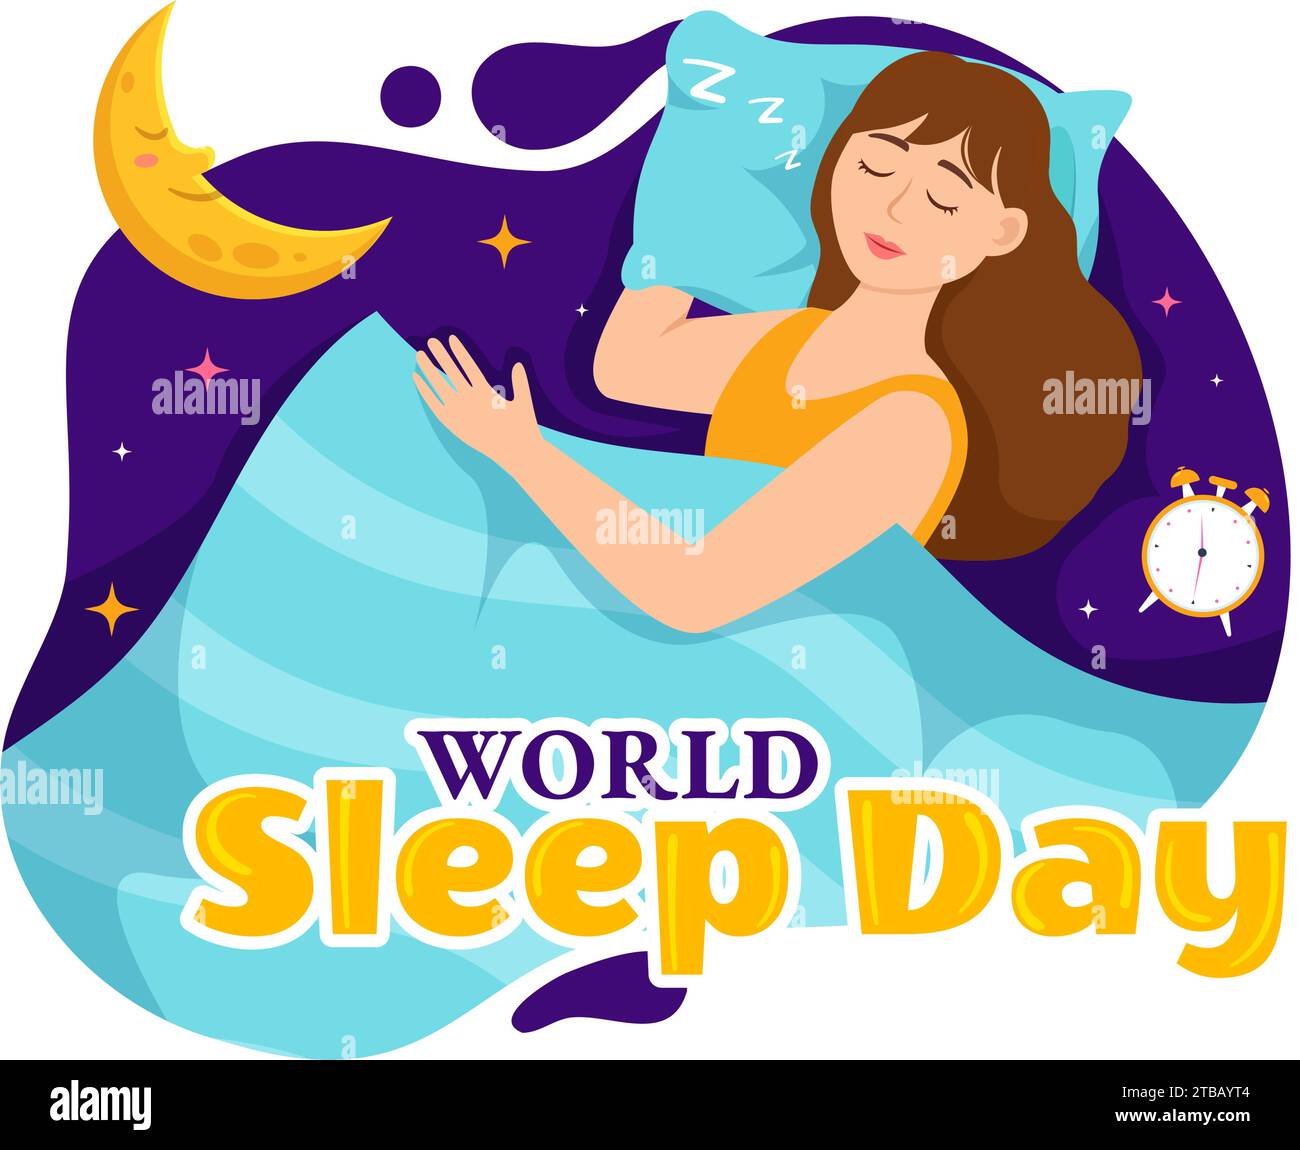 Illustration vectorielle de la Journée mondiale du sommeil le 15 mars avec les gens dormant, les nuages, la planète Terre et la Lune dans Sky Backgrounds Flat Cartoon Design Illustration de Vecteur